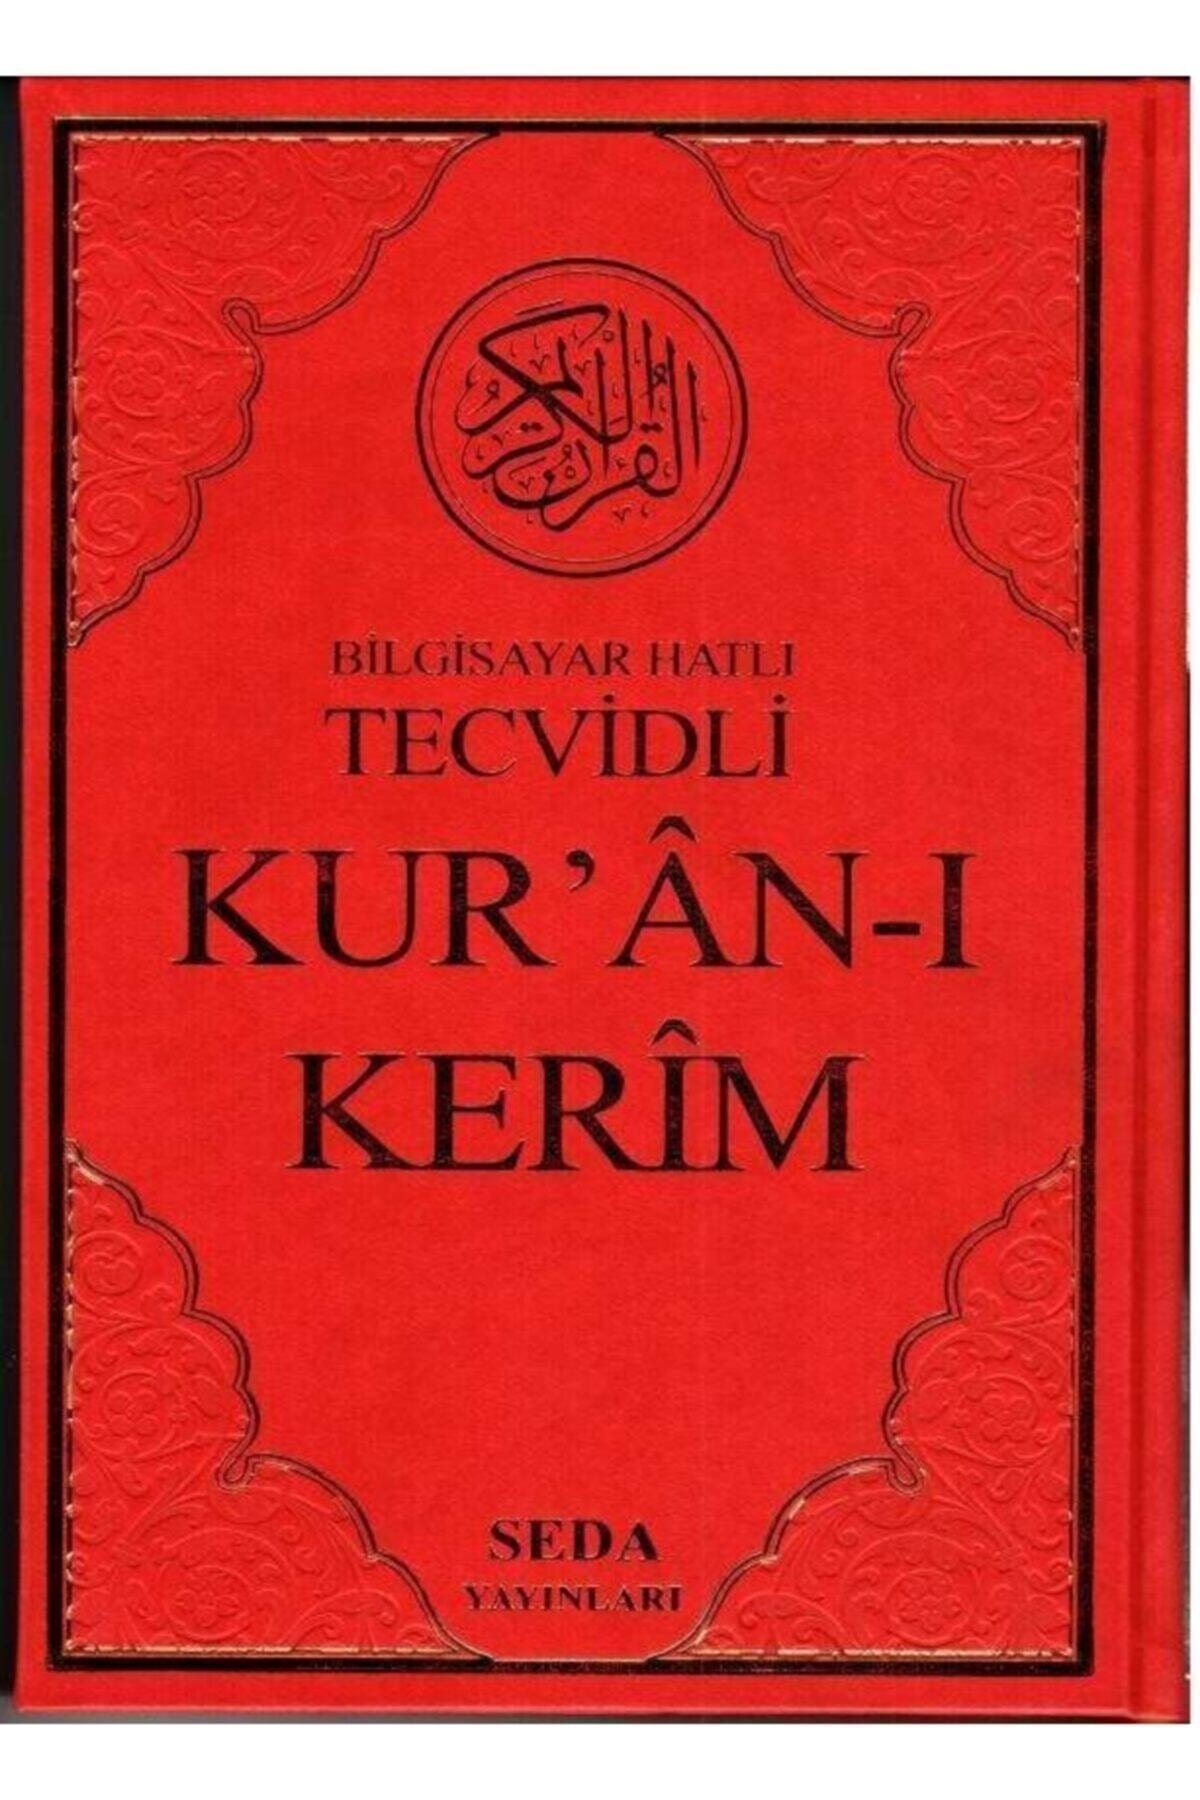 Seda Yayınları Tecvidli Kuranı Kerim, 25x35 Cm. Cami Boy, Sayfa Altında Tecvitli Kuran, Seda